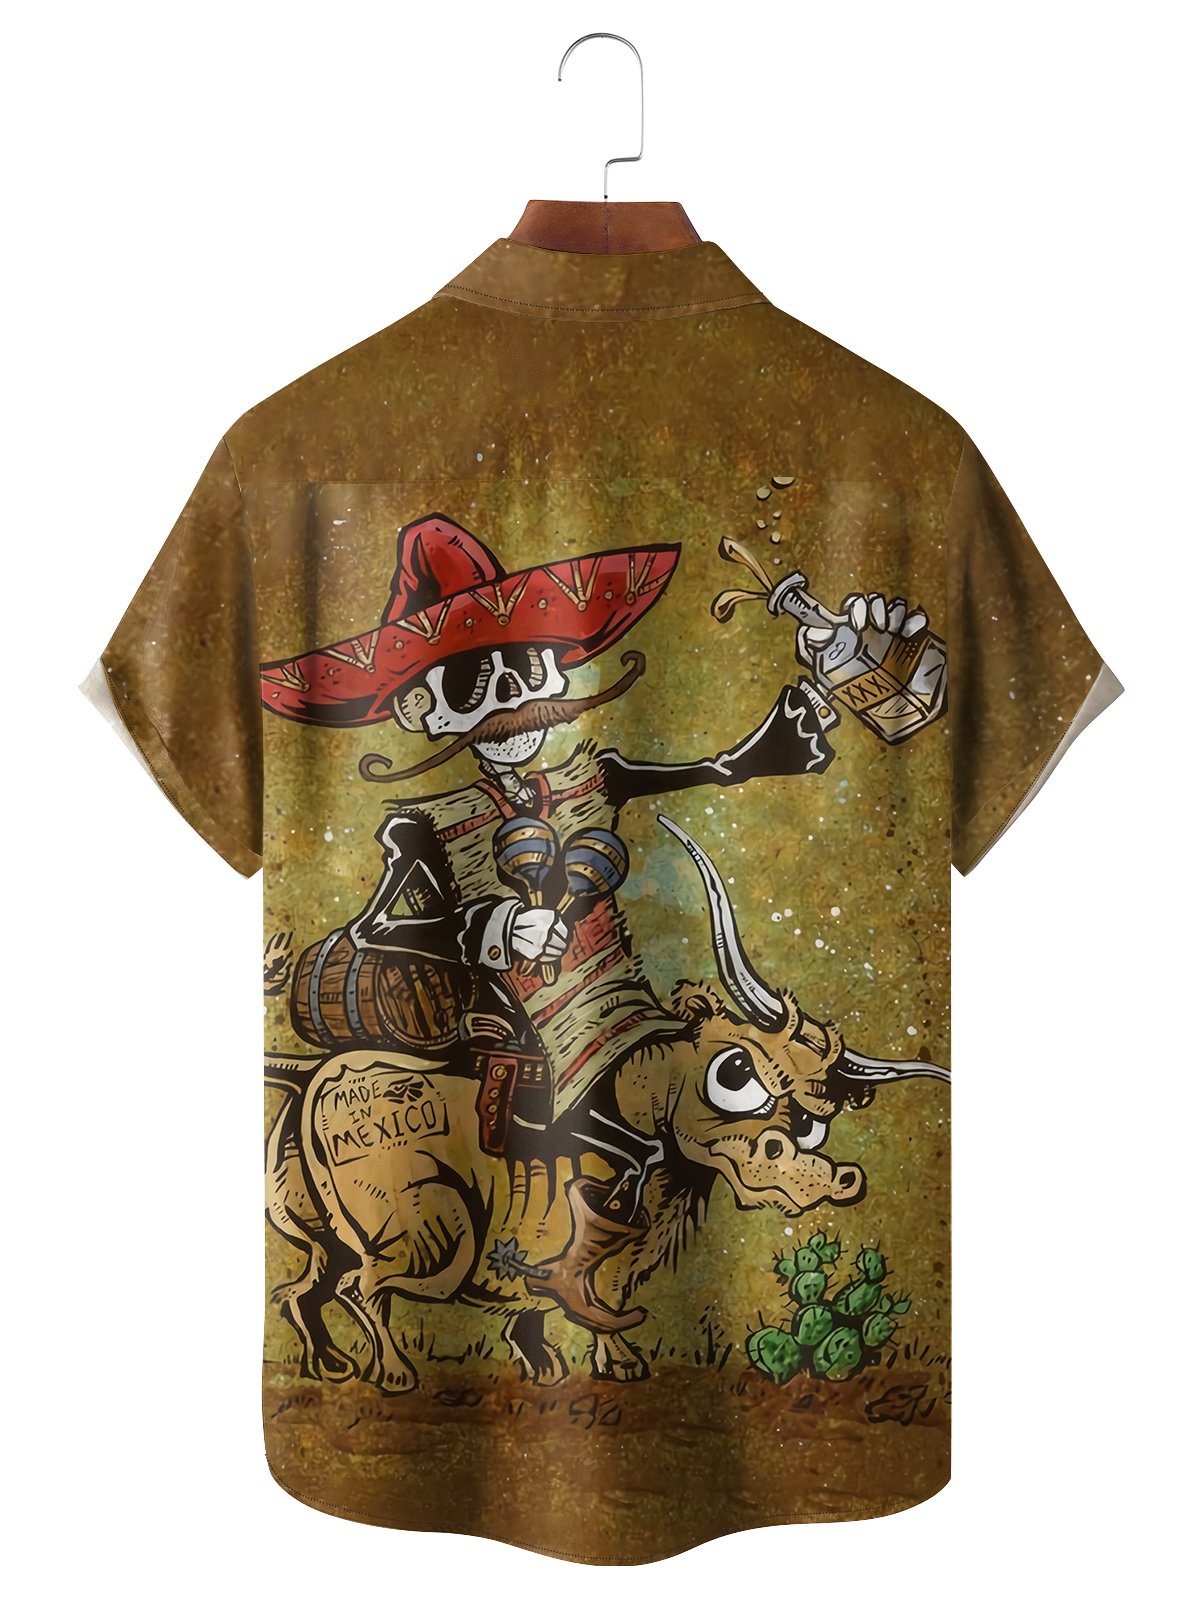 Wild West Shirt By David Lozeau